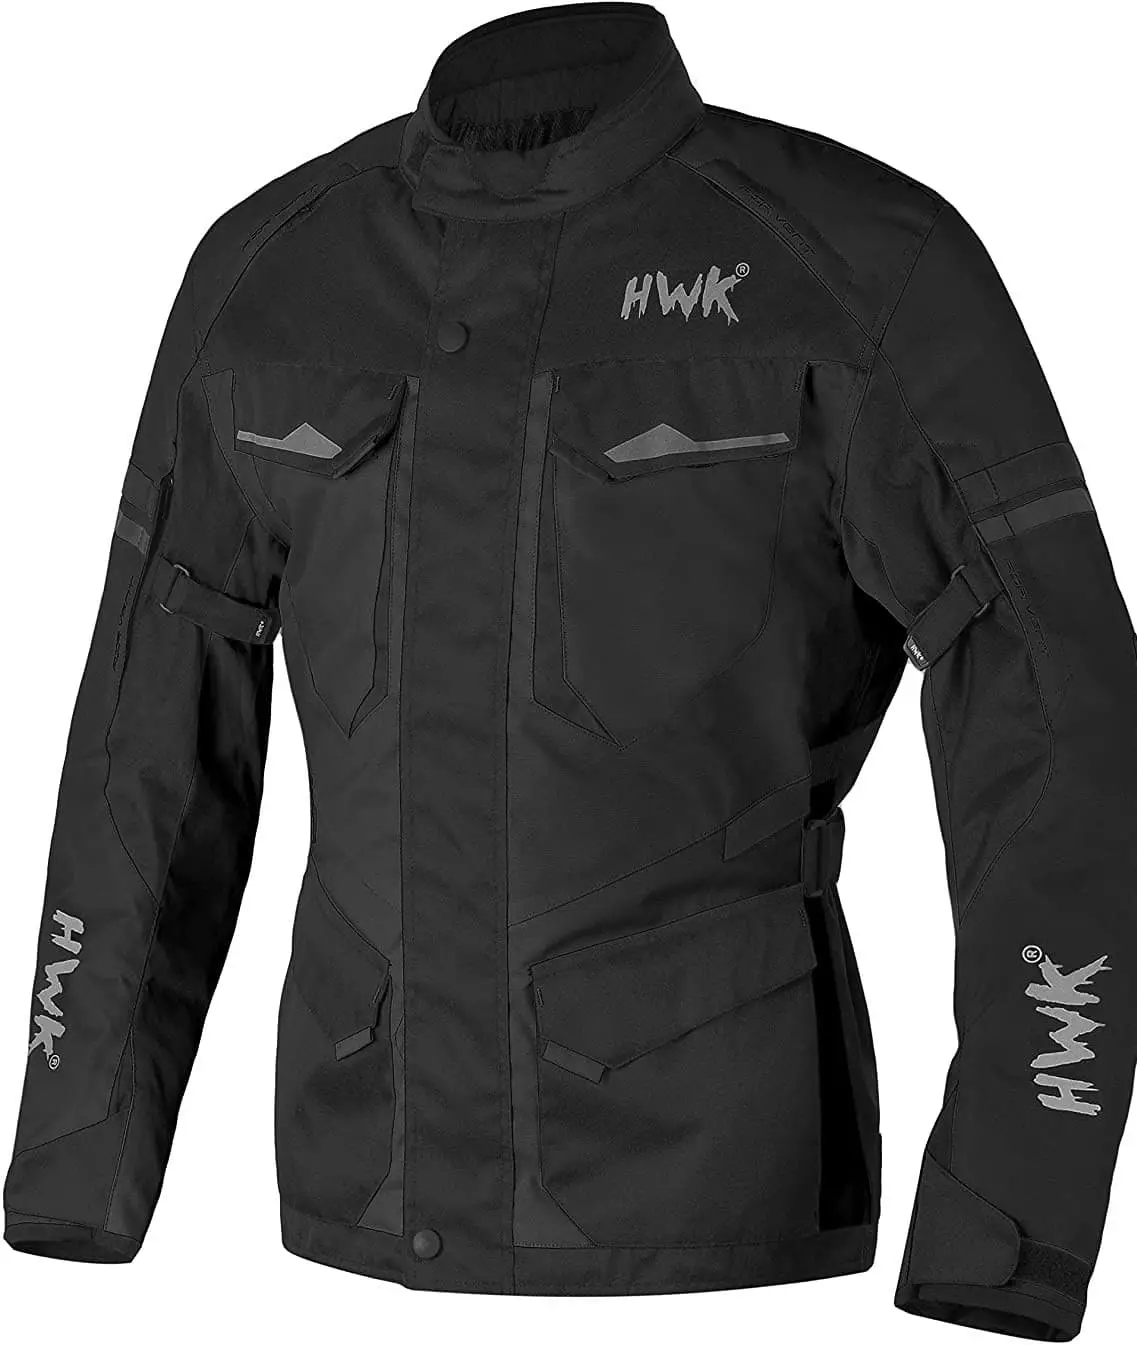 hwk-adventure-motorcycle-jacket